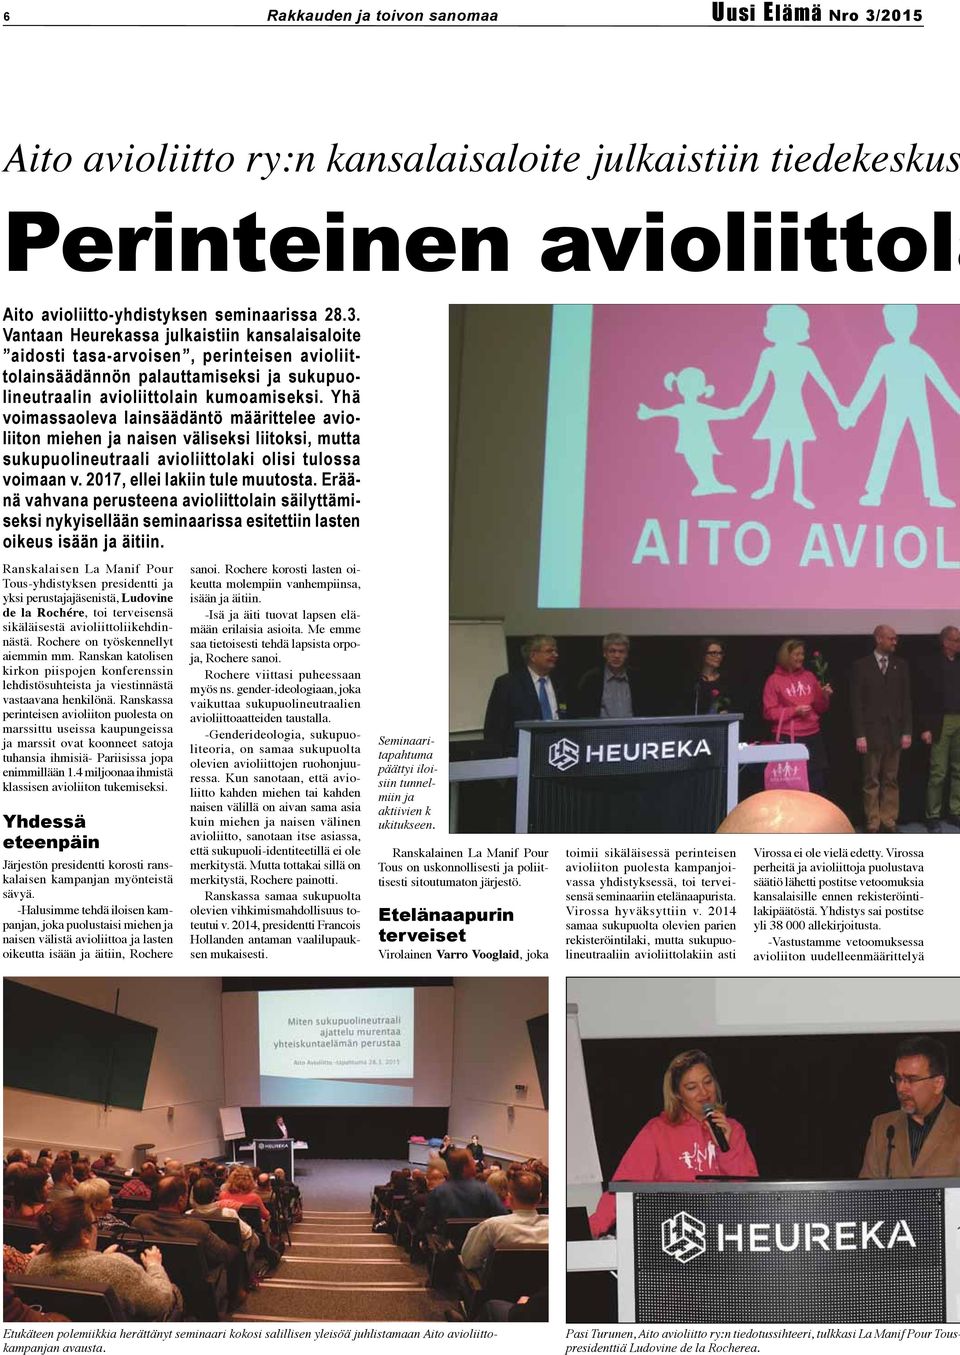 Vantaan Heurekassa julkaistiin kansalaisaloite aidosti tasa-arvoisen, perinteisen avioliittolainsäädännön palauttamiseksi ja sukupuolineutraalin avioliittolain kumoamiseksi.